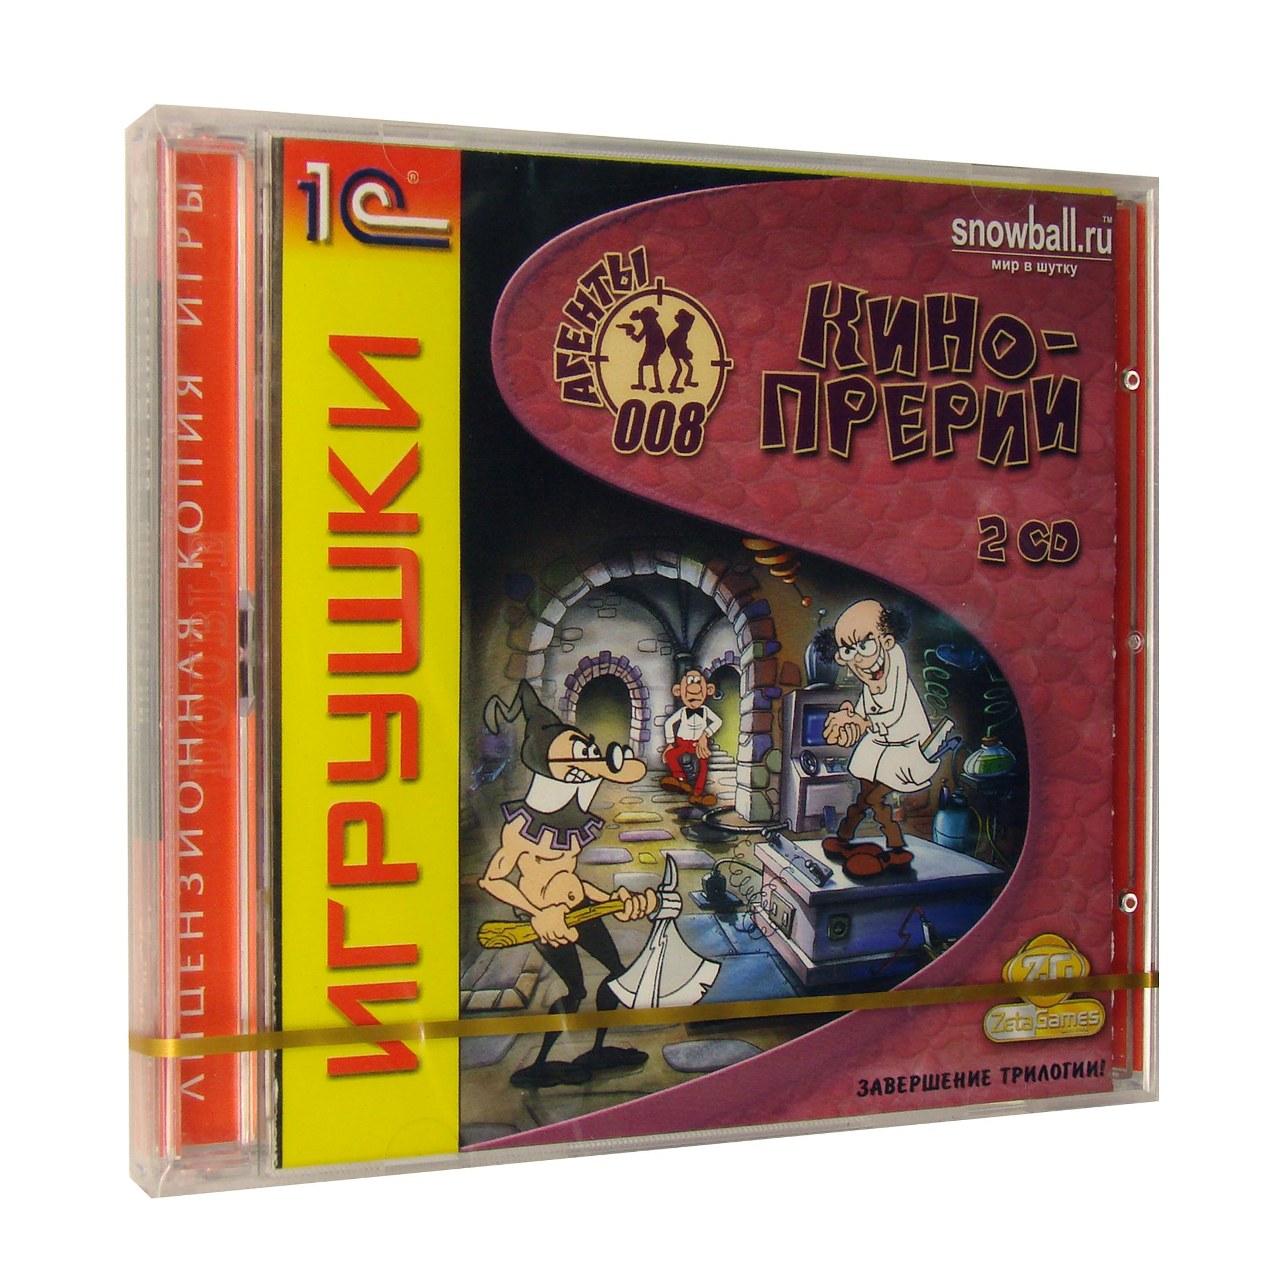 Компьютерный компакт-диск Агенты 008: Кинопрерии (ПК), фирма "1С", 2CD